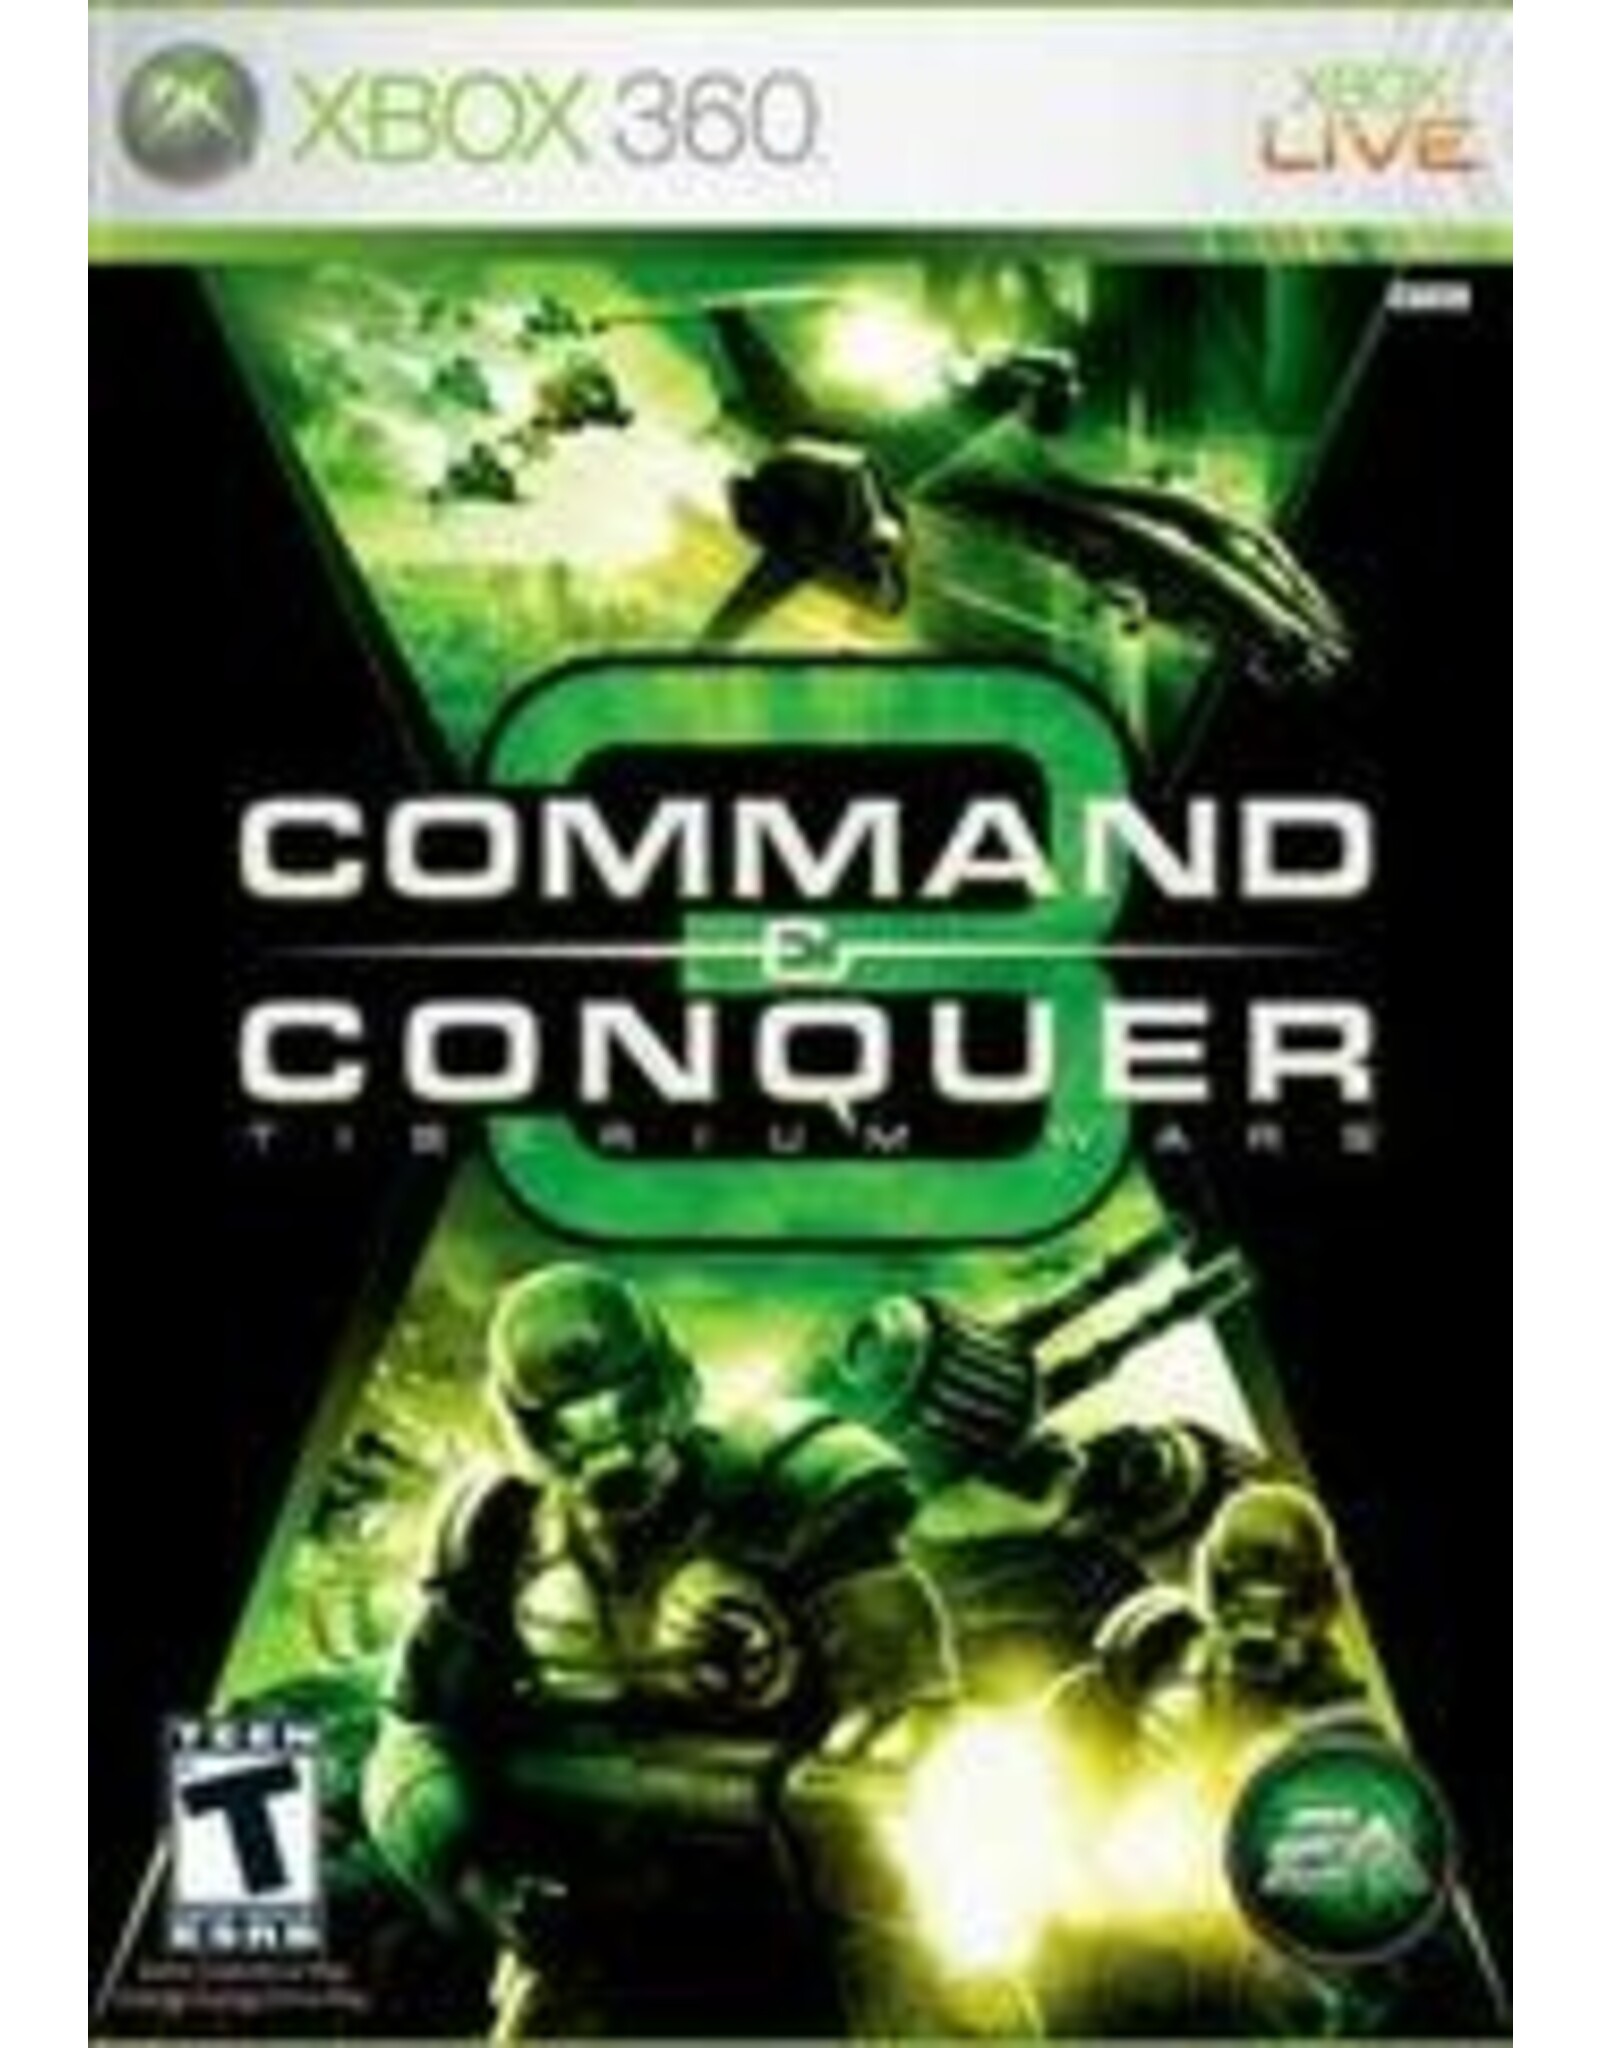 Xbox 360 Command & Conquer 3 Tiberium Wars (CiB)